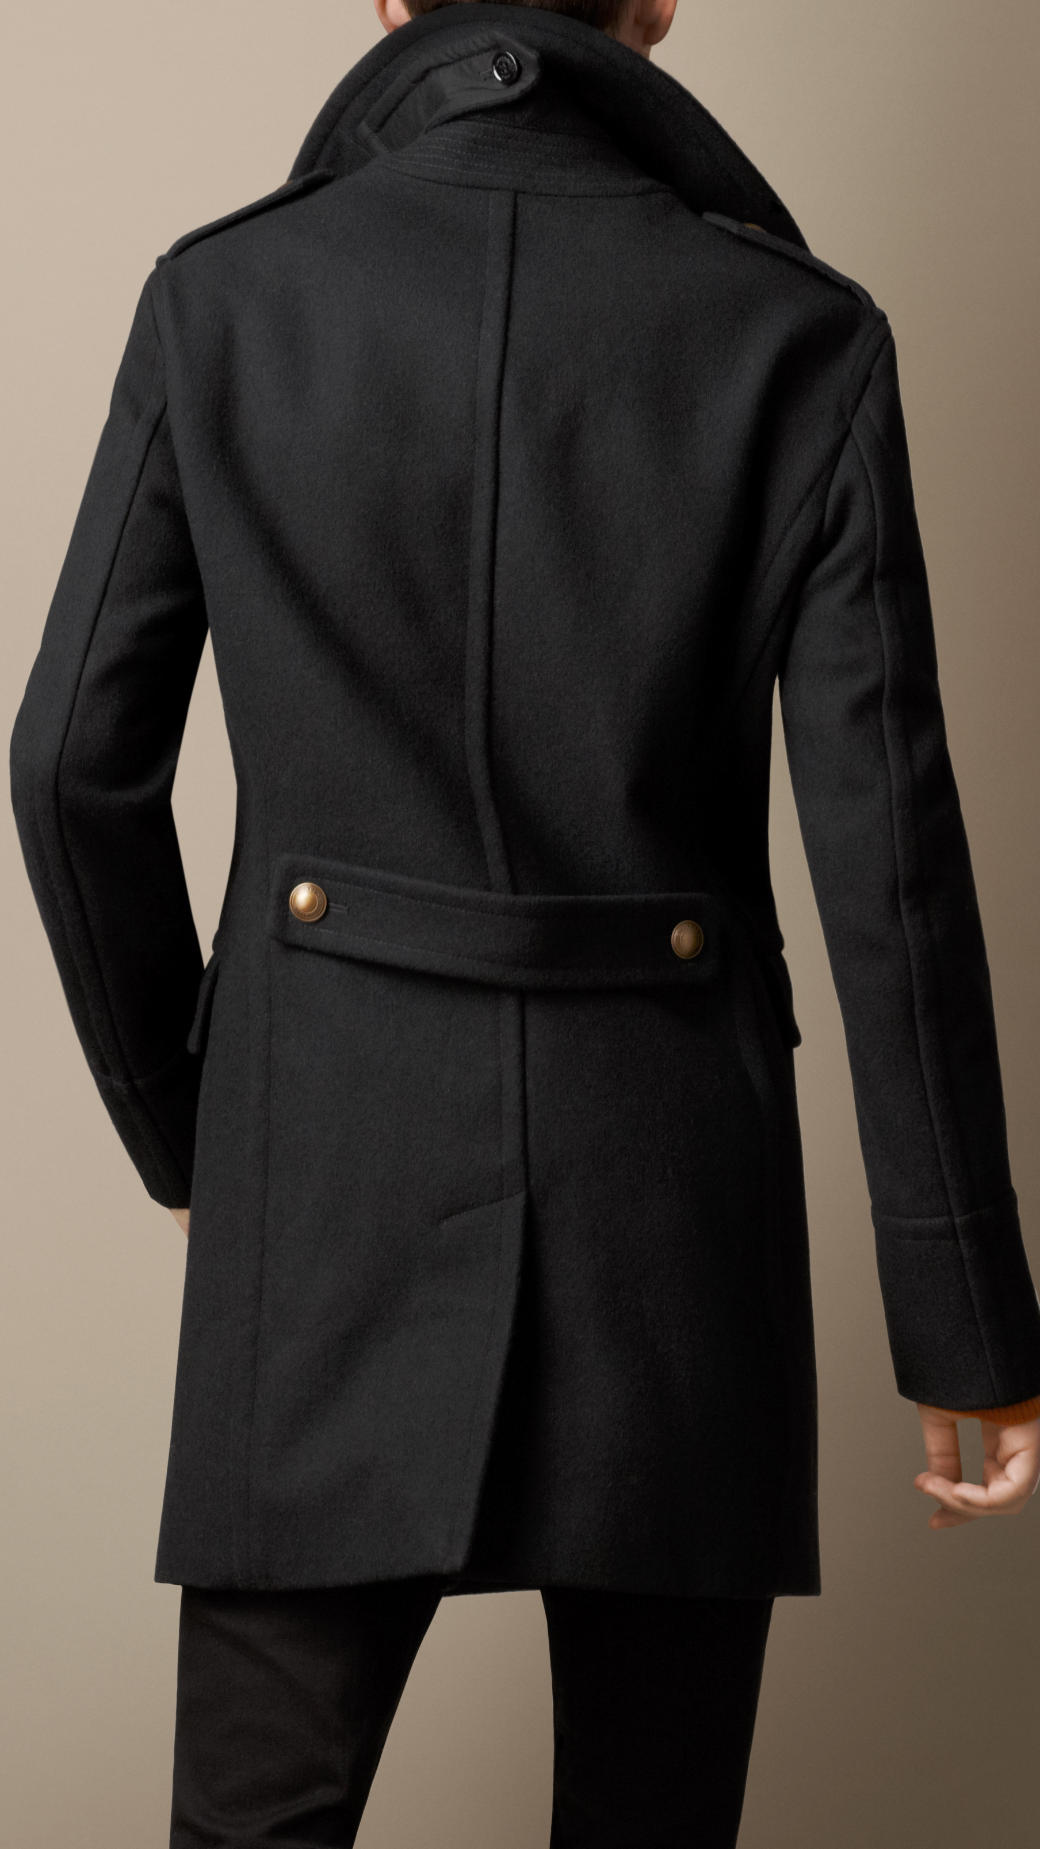 Burberry Melton Wool Blend Military Coat in Black for Men - Lyst